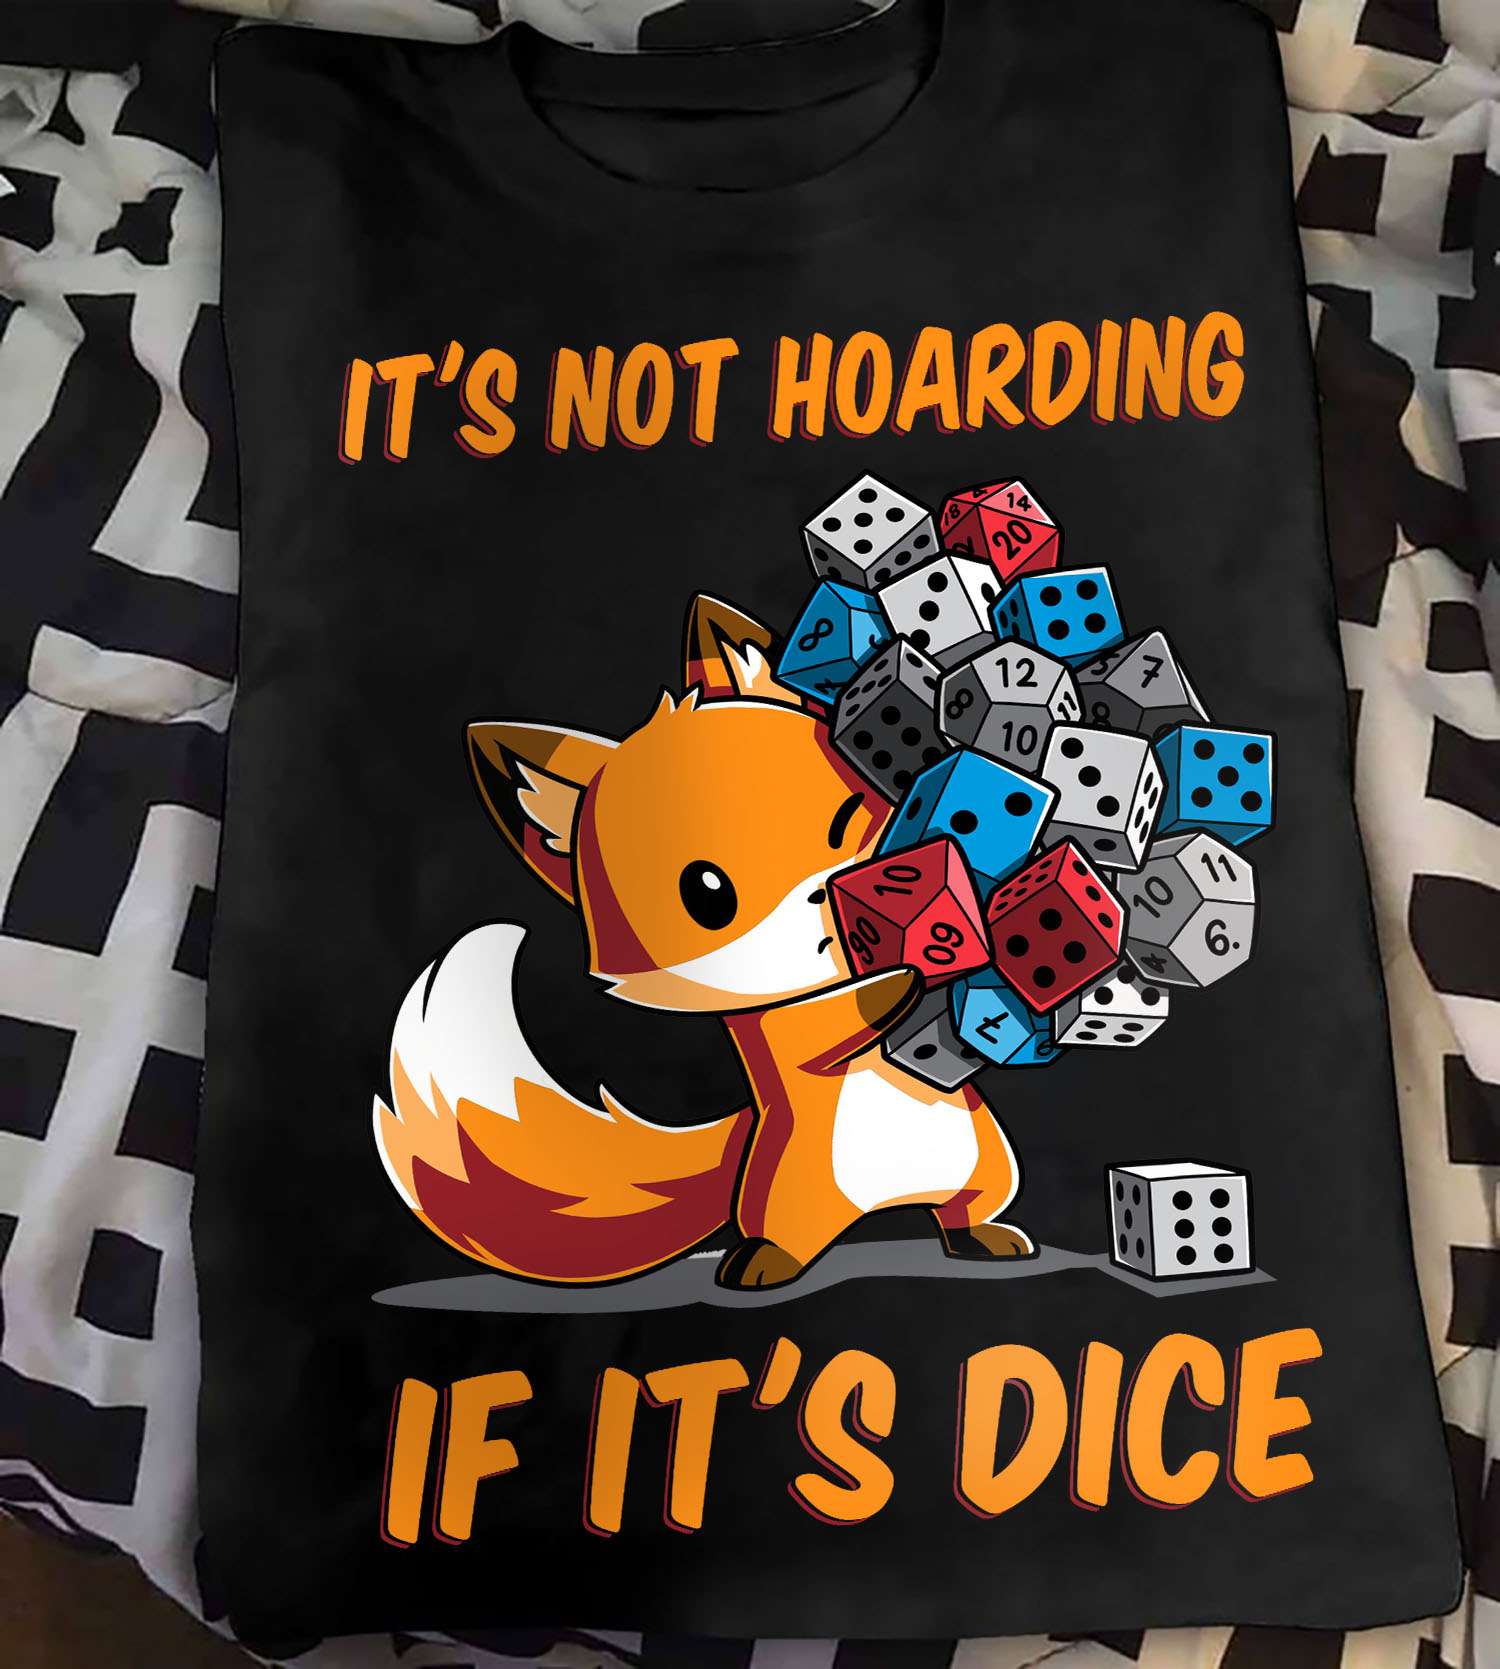 Fox Dice - It's not hoarding if it's dice